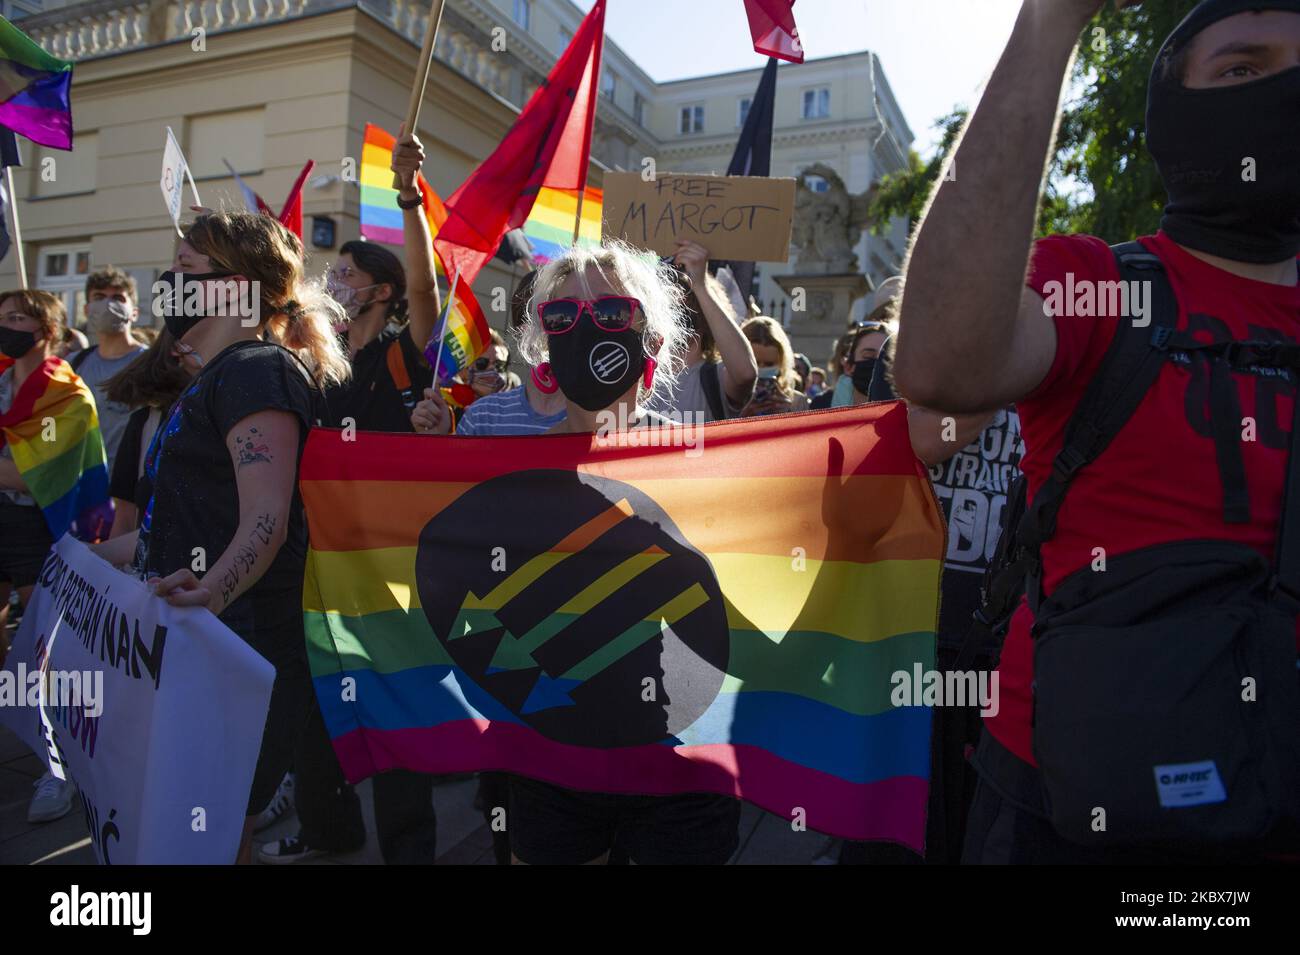 Ein Demonstranten hält am 16. August 2020 in Warschau, Polen, eine LGBT-Flagge mit Antifa-Logo. Rund hundert Demonstranten versammelten sich vor dem Haupteingang der Universität Warschau, um gegen die Diskriminierung der LGBT-Minderheit in Polen zu protestieren. Zur gleichen Zeit fand eine von verschiedenen Nationalisten-Gruppen organisierte Gegendemonstration statt, bei der etwa dieselbe Anzahl von Gegendemonstlern Slogans schrie und LGBT-Fahnen brannte. (Foto von Aleksander Kalka/NurPhoto) Stockfoto